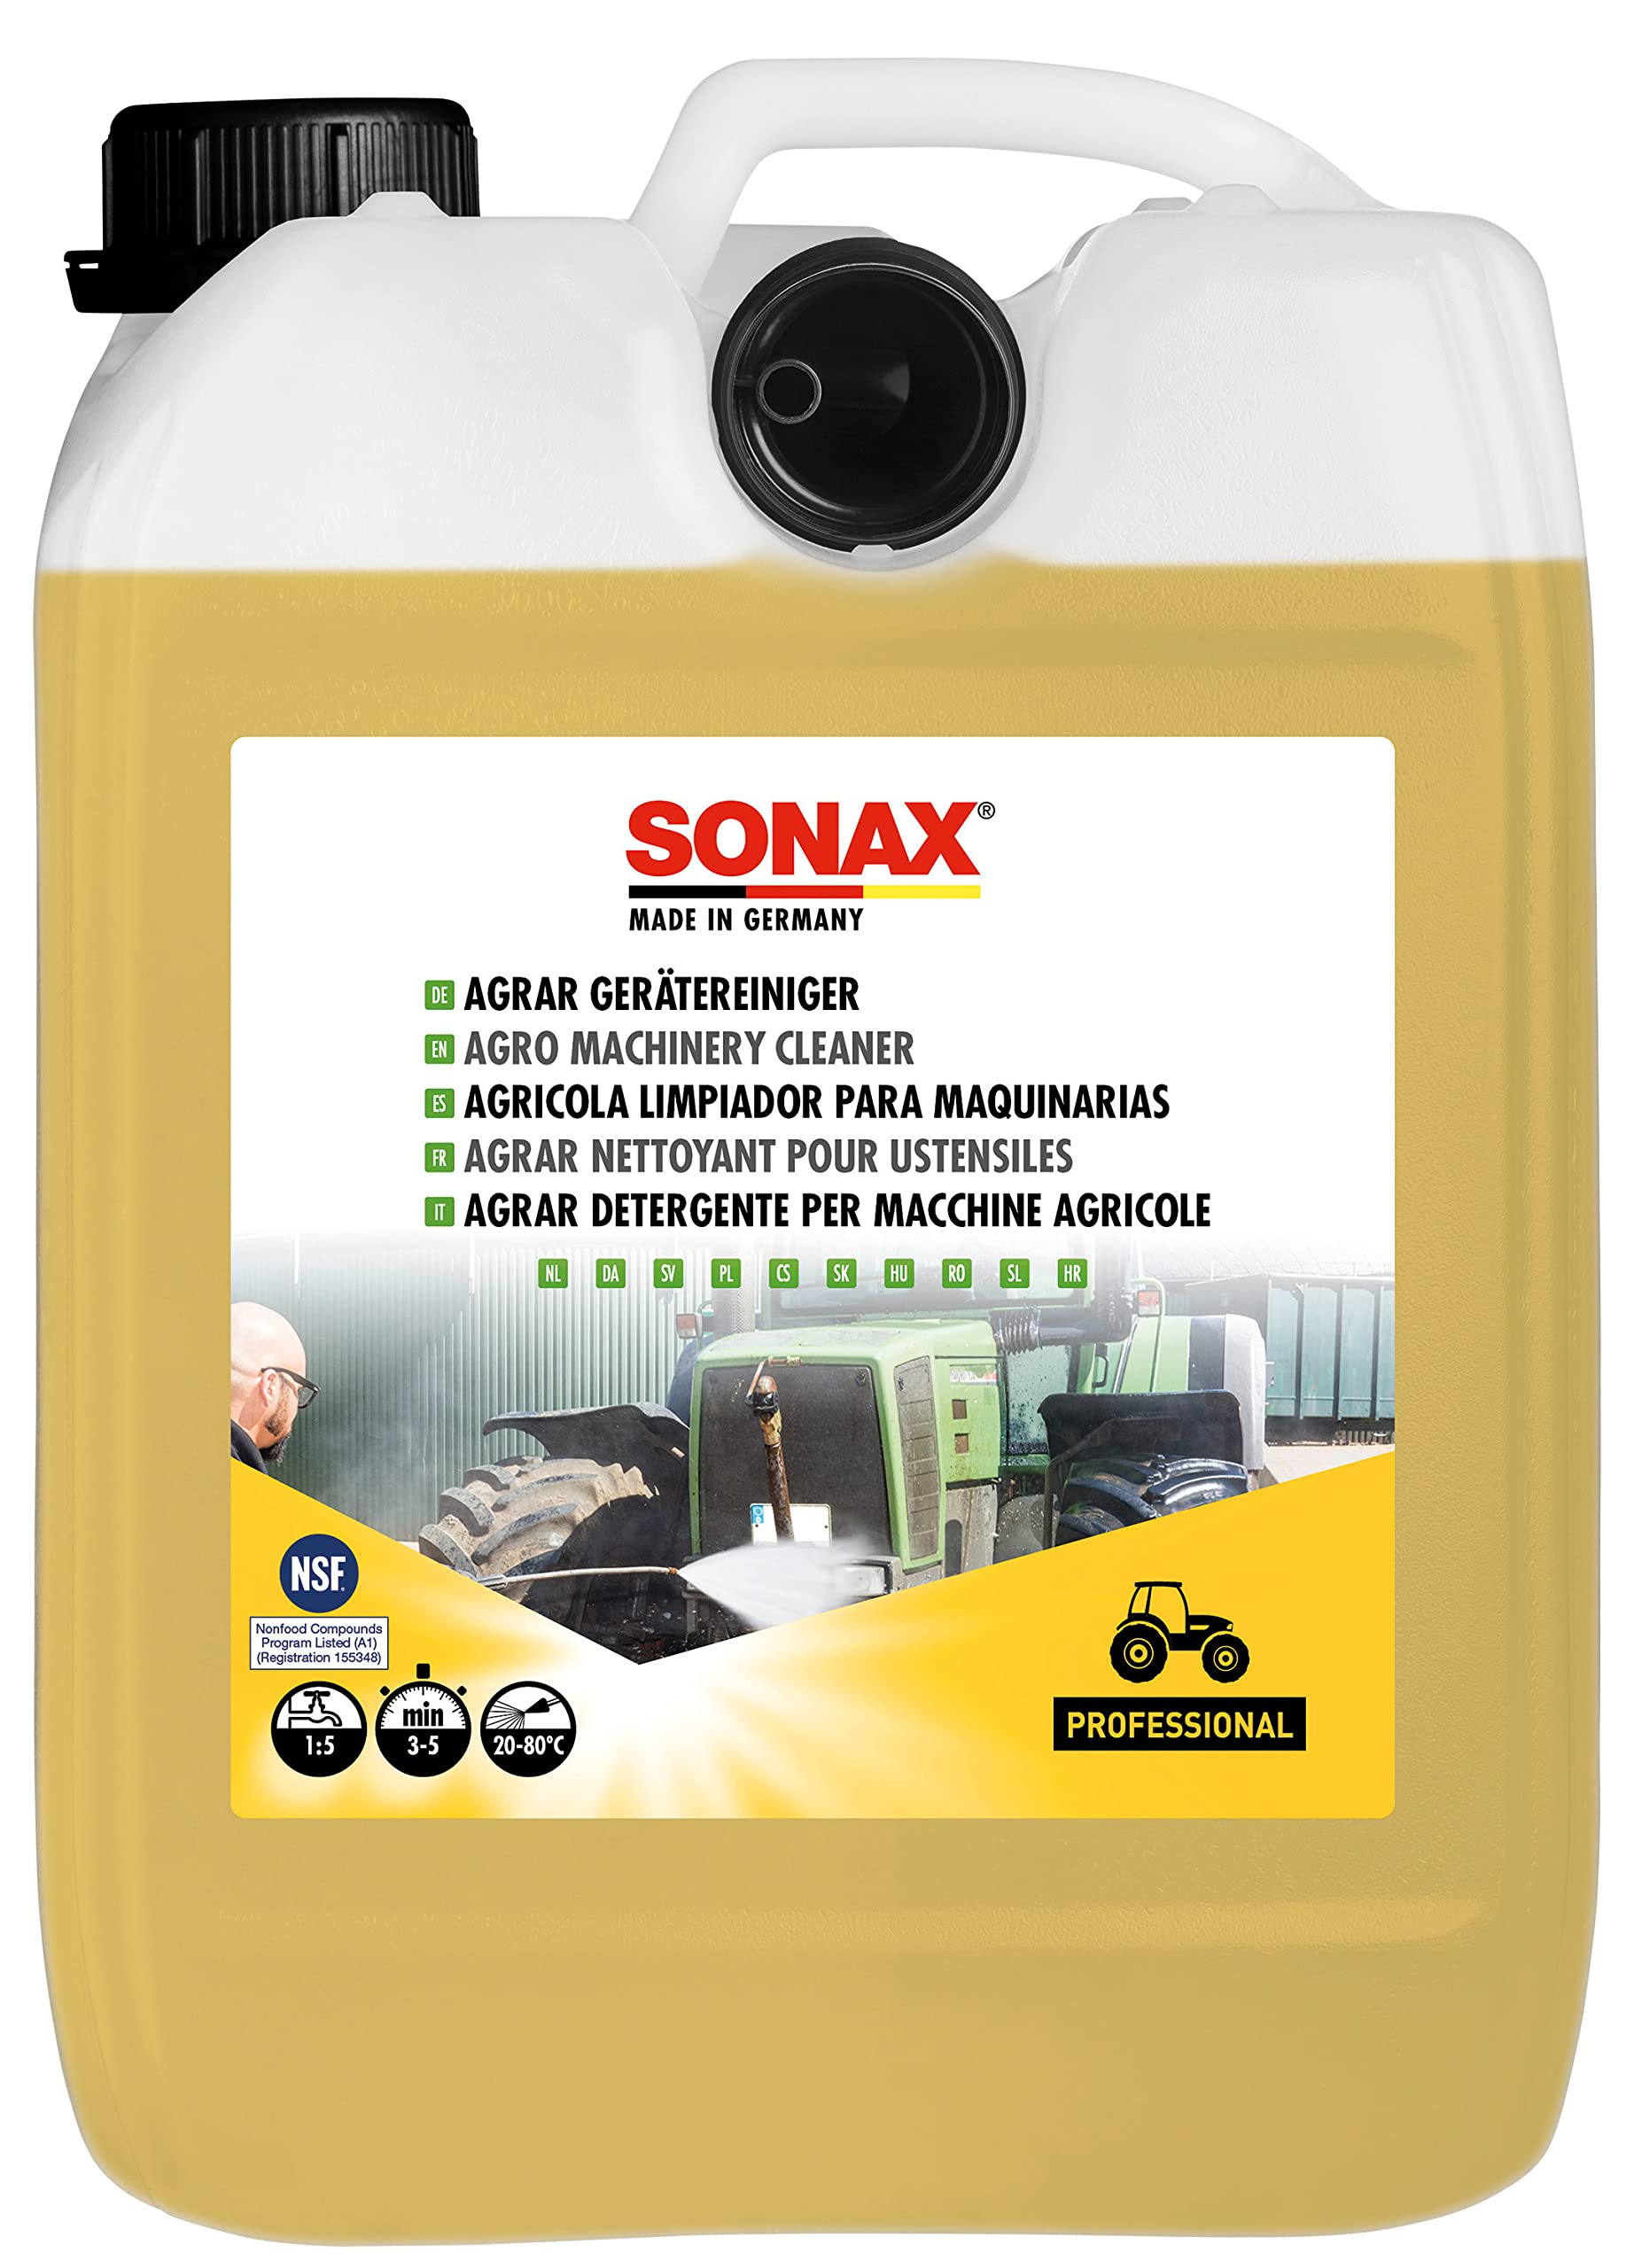 SONAX AGRAR GeräteReiniger (5 Liter) alkalischer Kraftreiniger für die Reinigung von landwirtschaftlichen Fahrzeugen, Maschinen & Anlagen sowie zur Werkstattreinigung, Art-Nr. 07055000 von SONAX